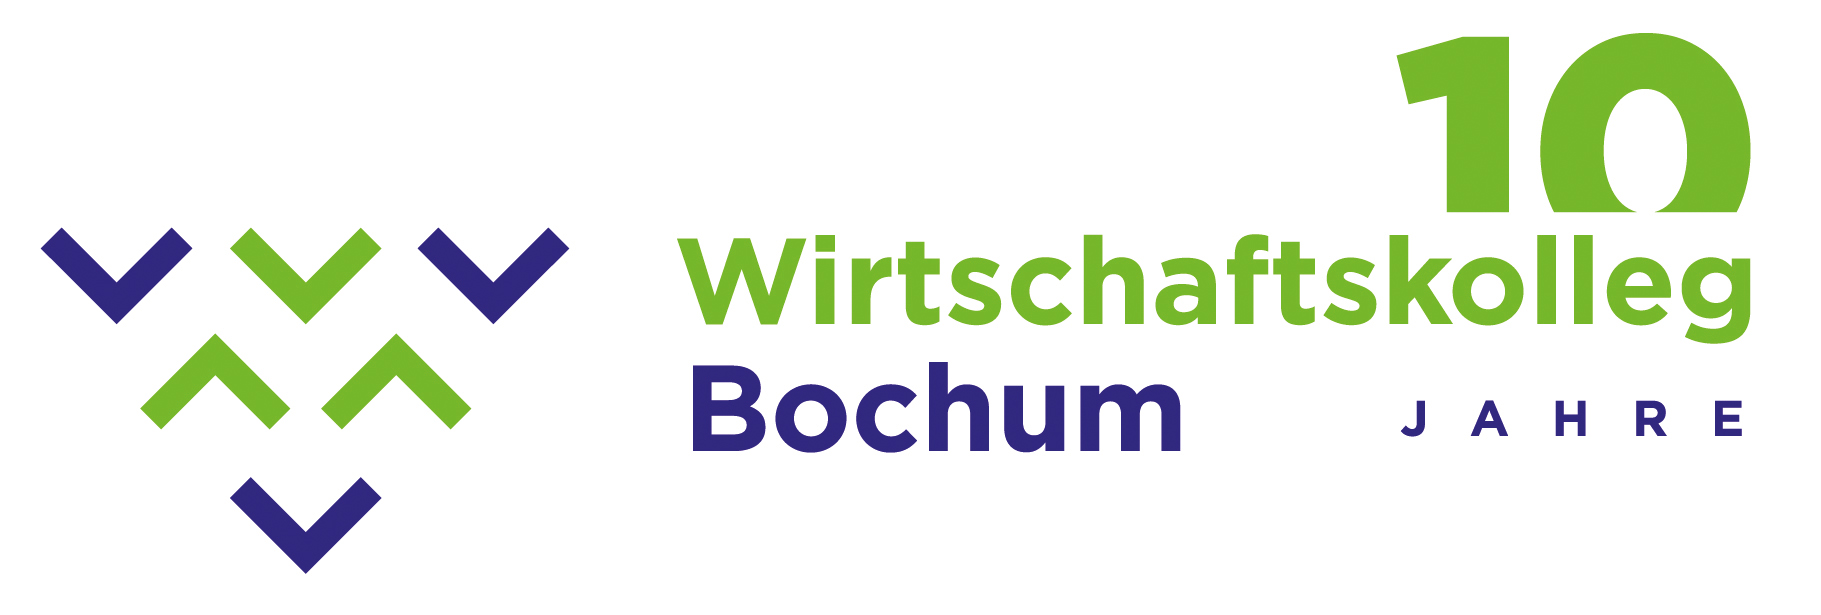 Wirtschaftskolleg Bochum